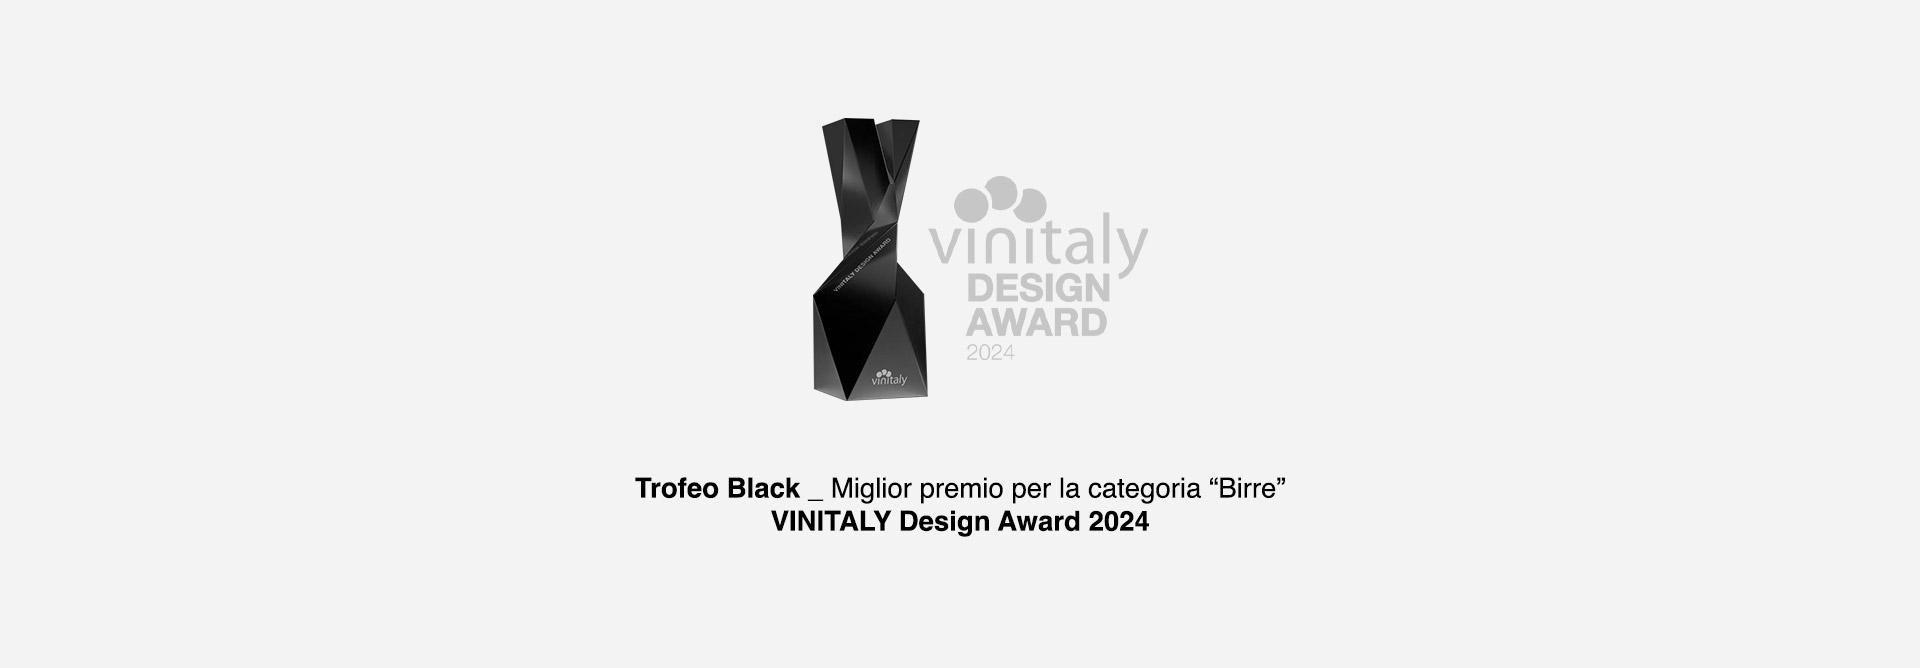 davidescarpantonio-dsigndscipline-vinitaly-2024-trofeo-black-1